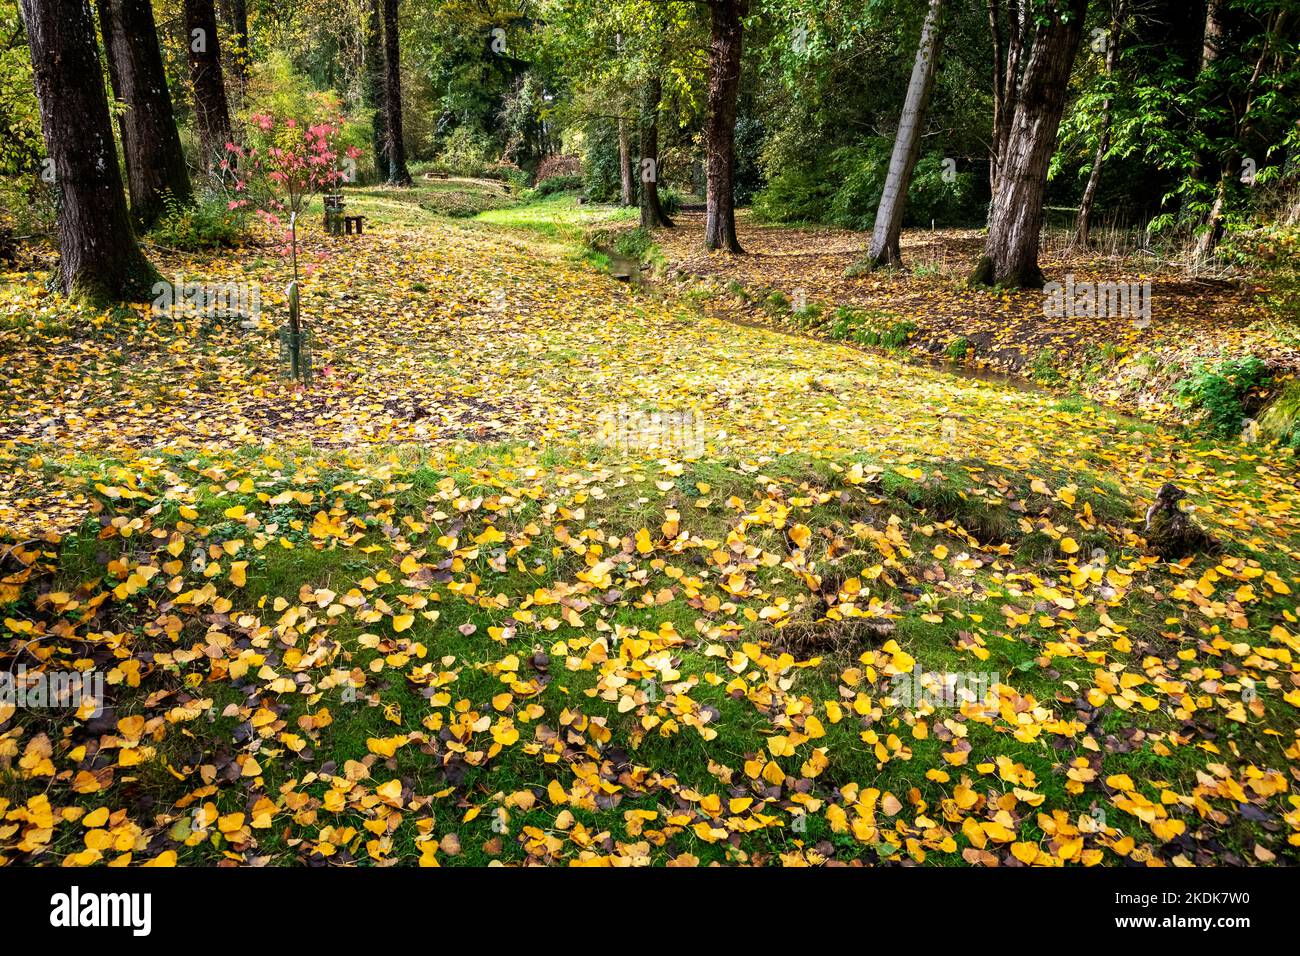 Les feuilles tombées en automne créent un joli tapis de jaune et de marron Banque D'Images